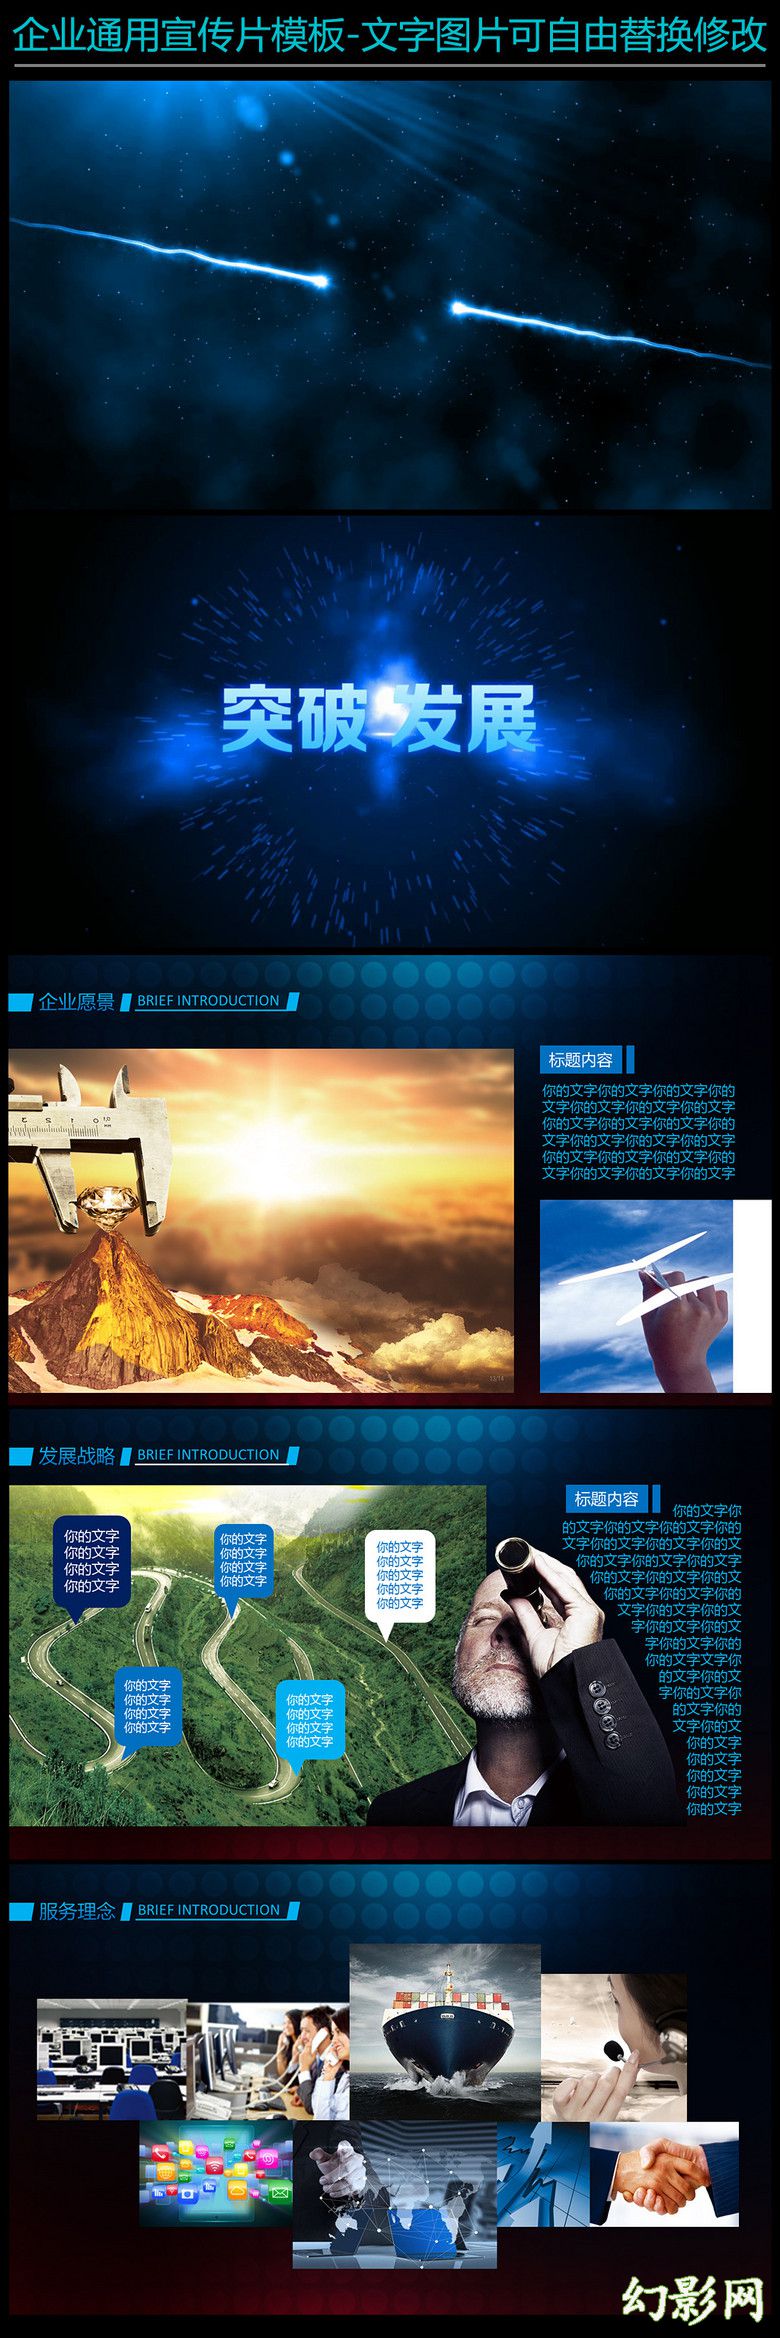 蓝色动态商务汇报公司介绍企业宣传PPT模板